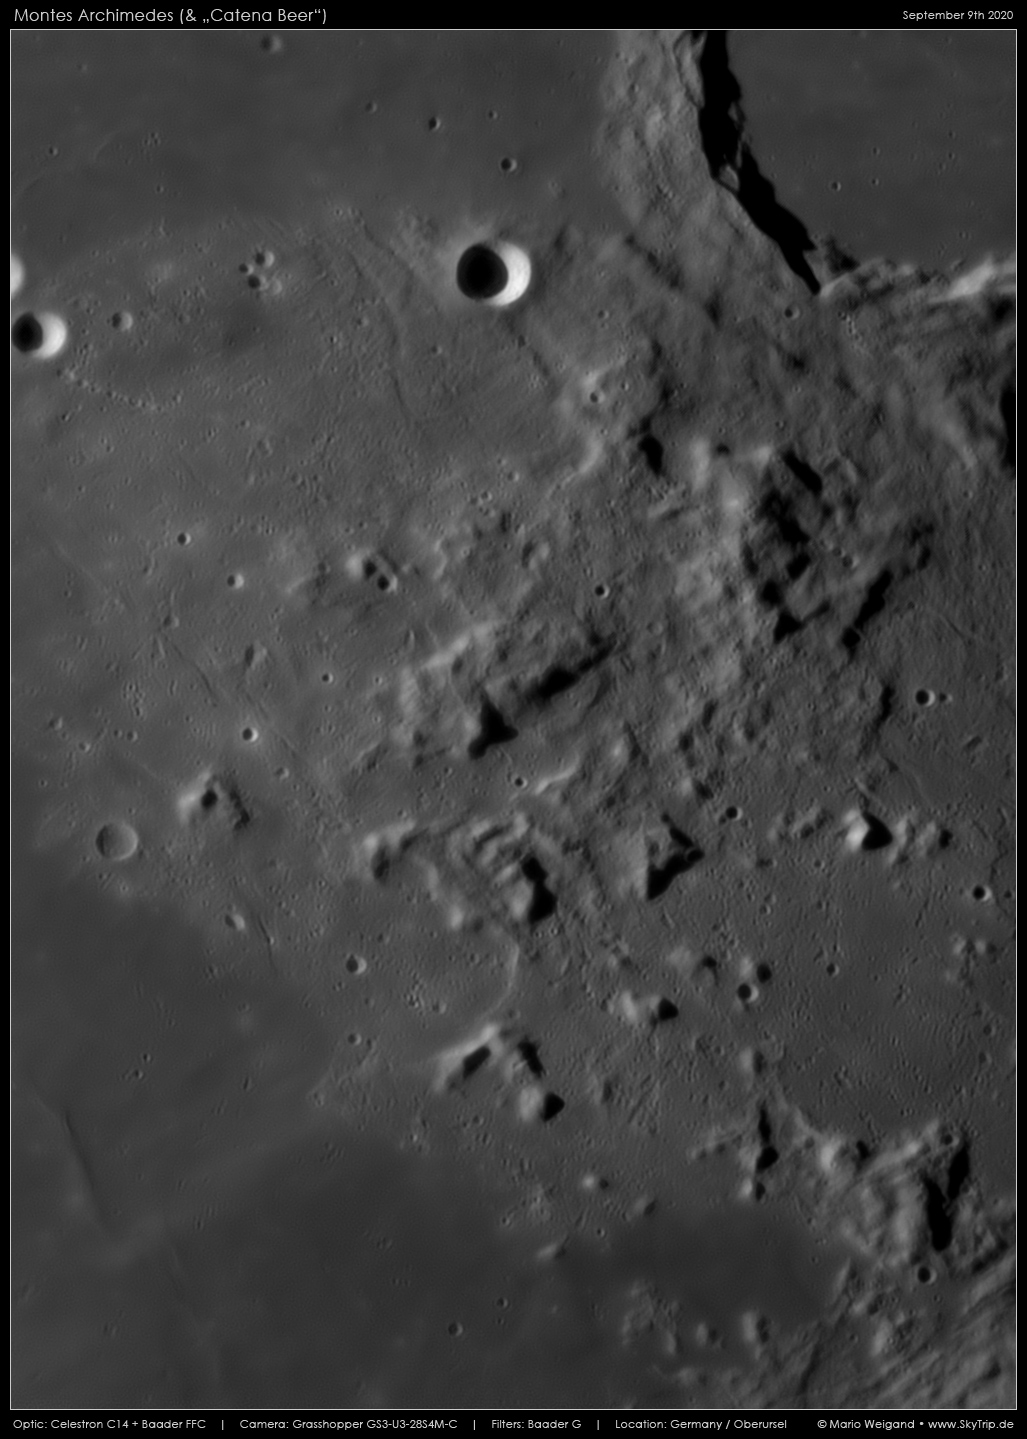 Mondfoto: Montes Archimedes